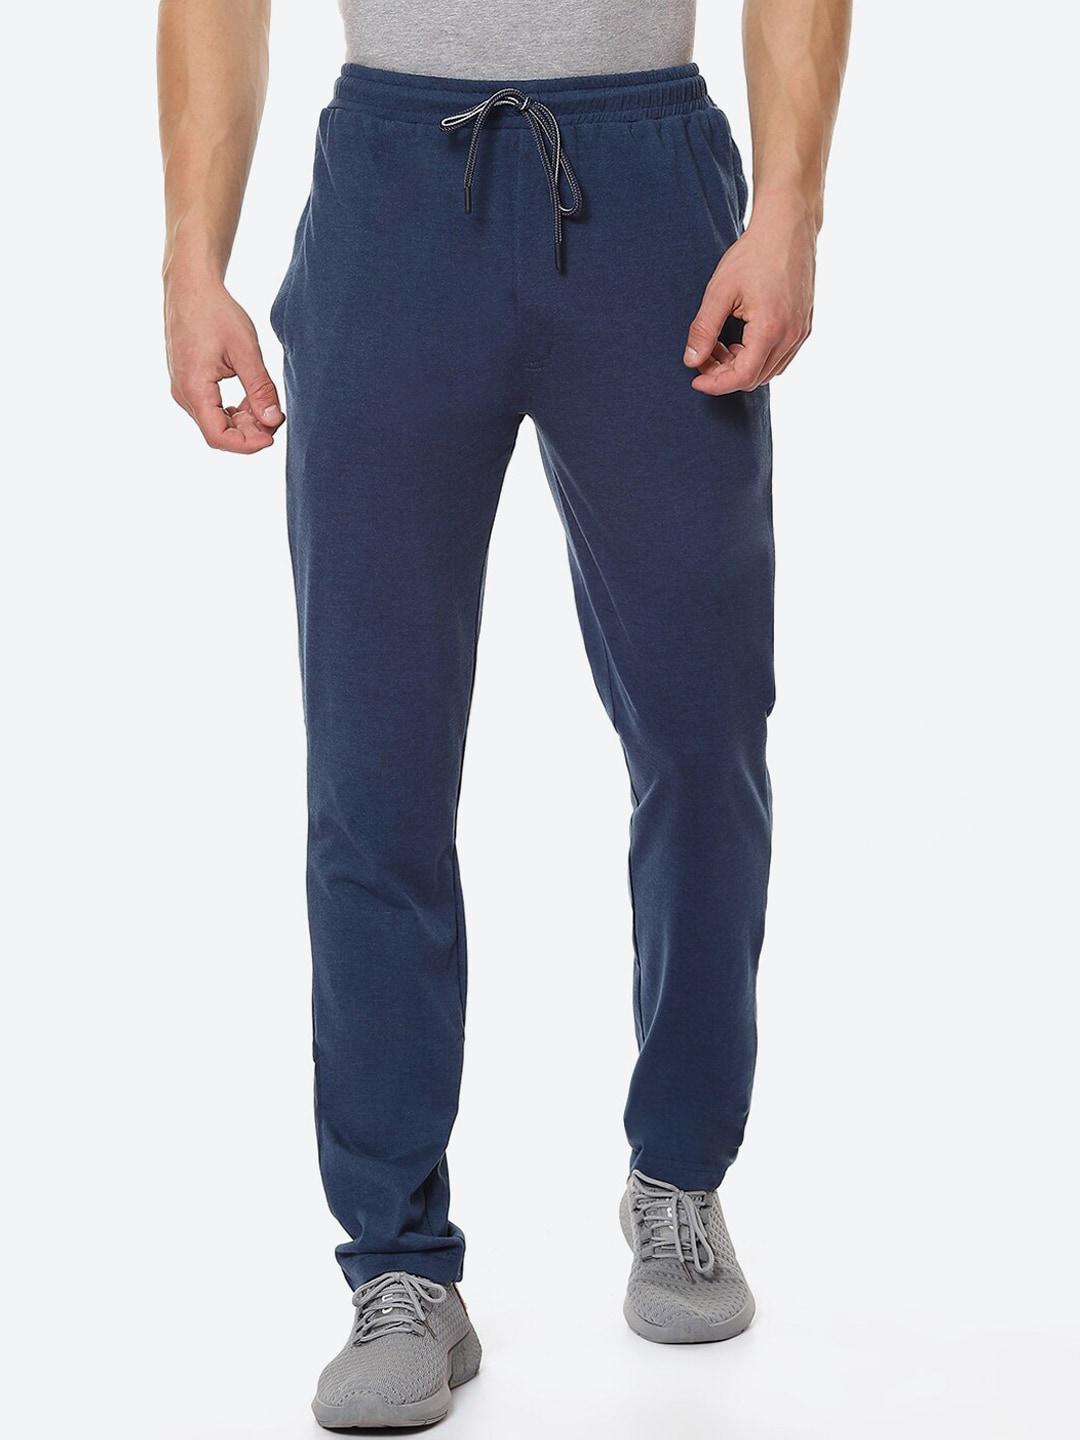 vinenzia-men-navy-blue-solid-pure-cotton-track-pants